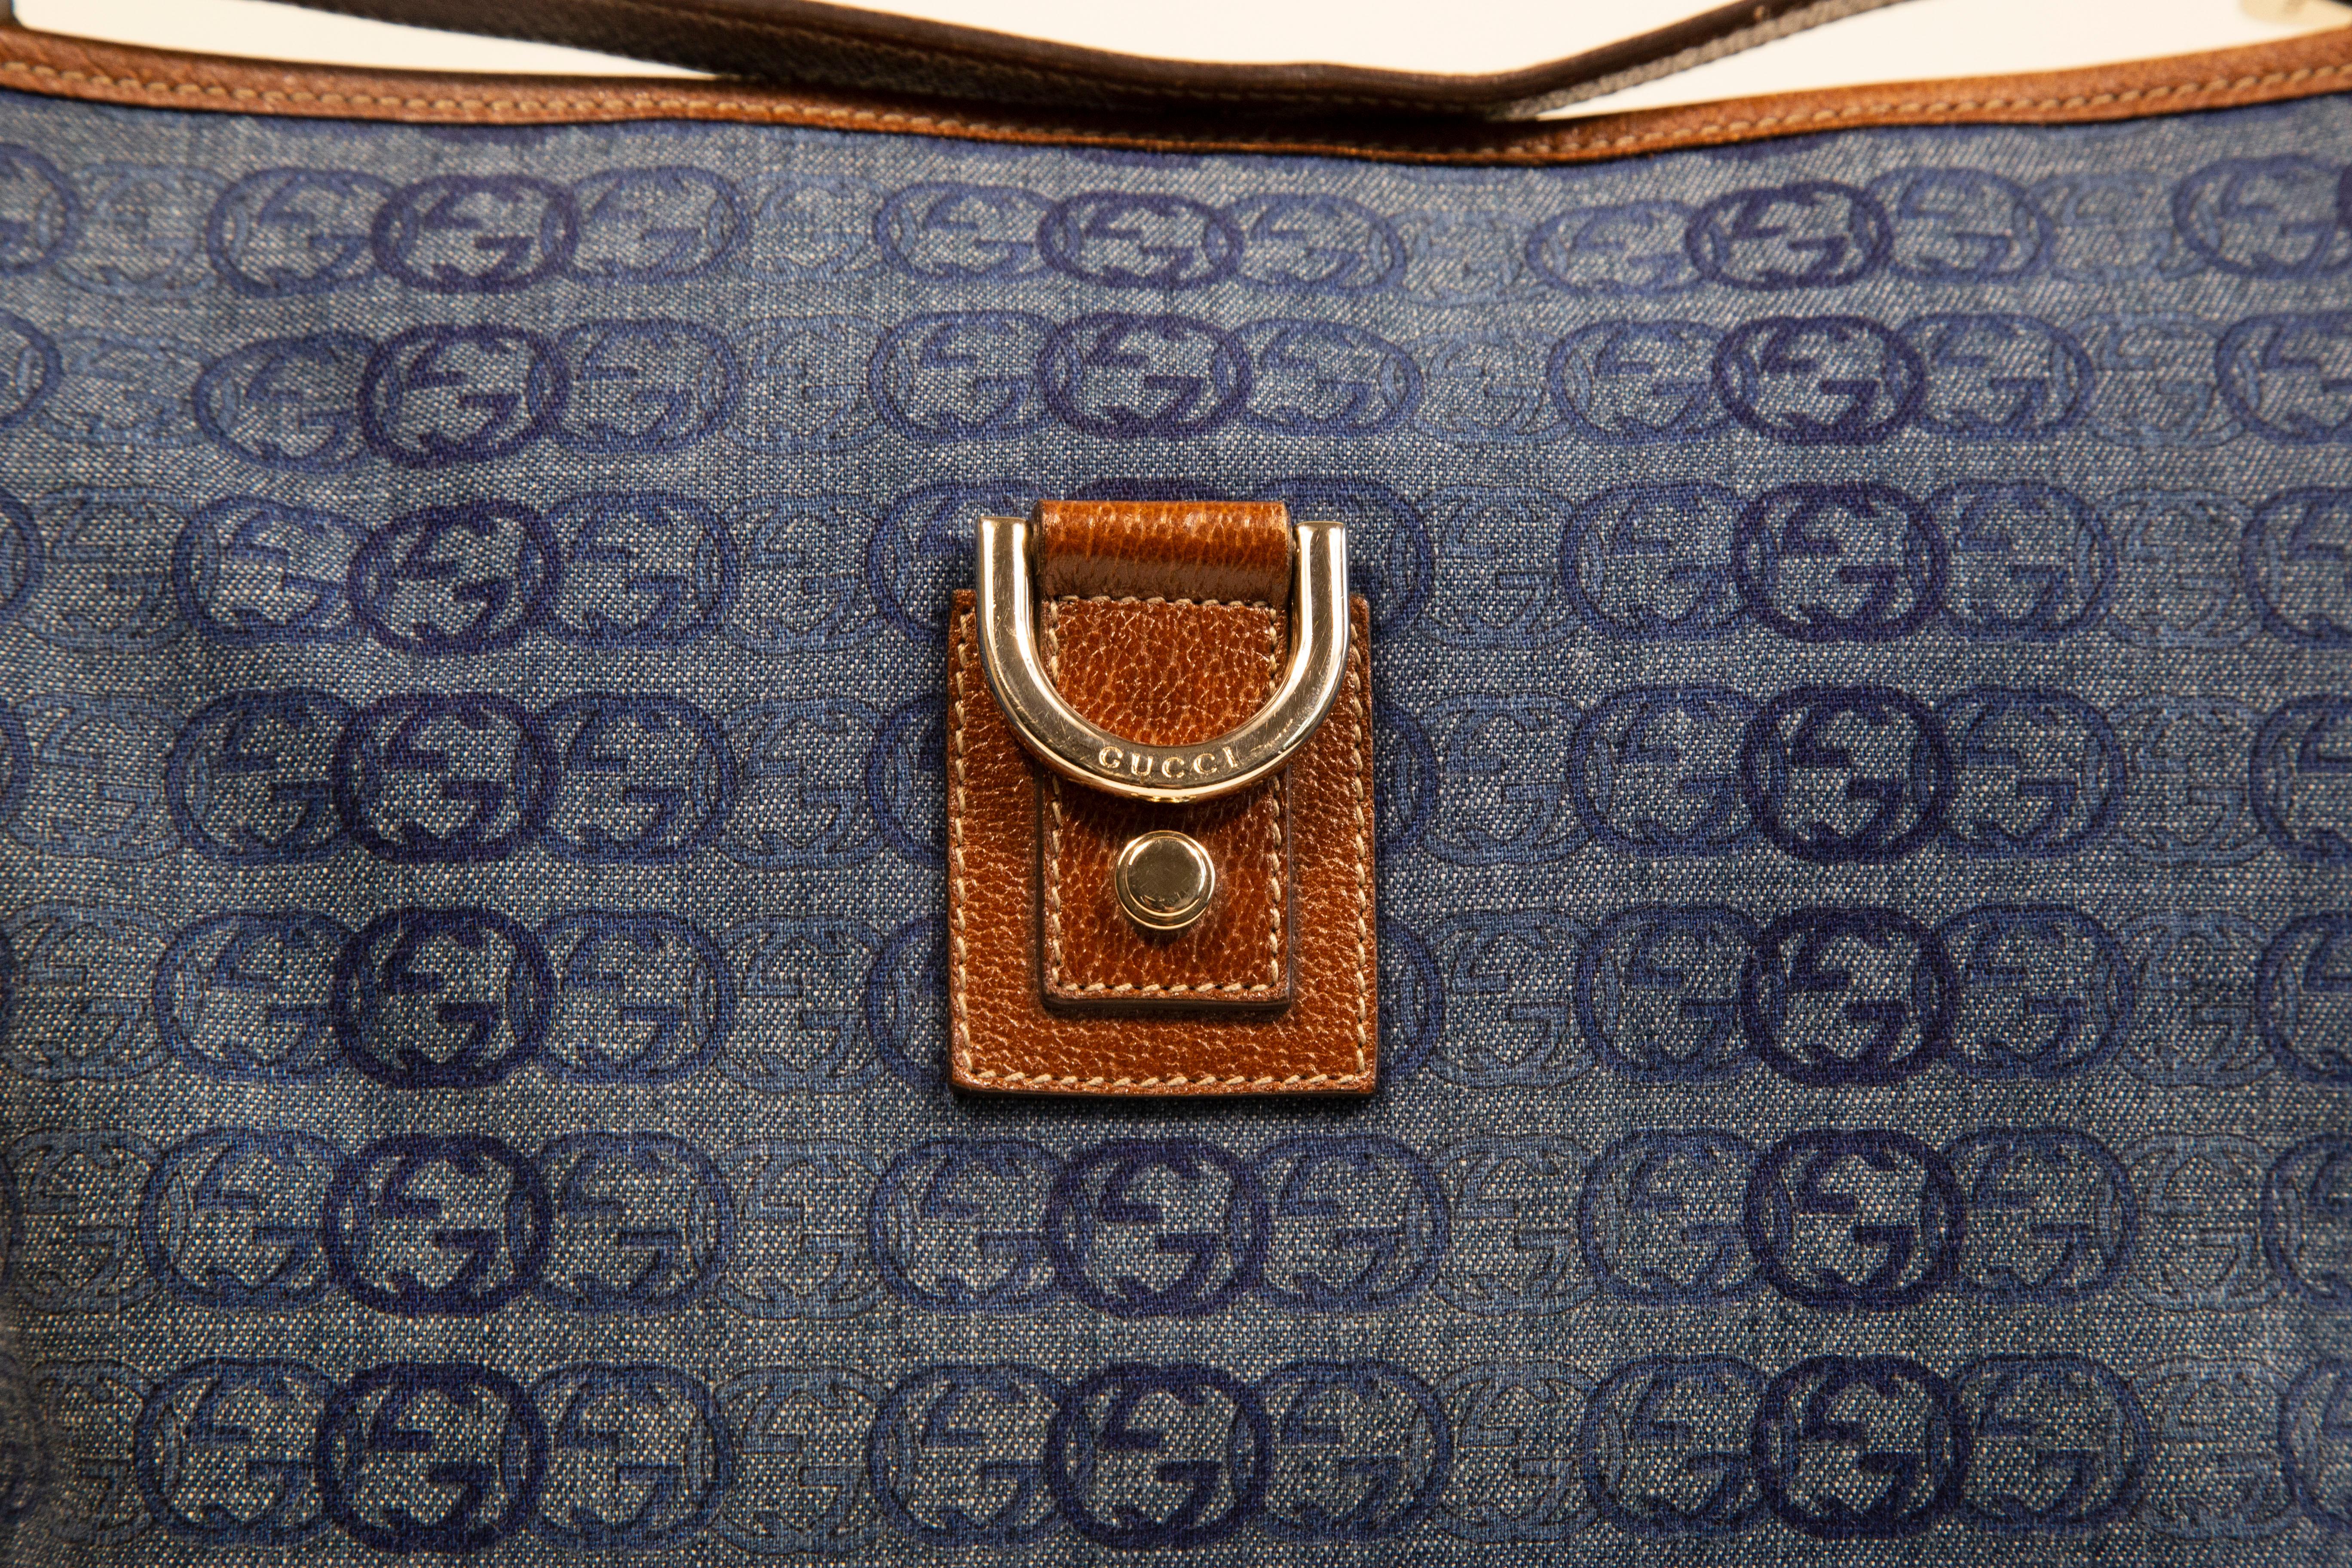 Un sac à main Gucci  en toile bleue/tissu jean avec motif GG imbriqué. Le sac est orné d'une bordure en cuir marron et de ferrures dorées. L'intérieur est doublé de tissu marron et comporte, à côté du compartiment principal, une poche pour téléphone